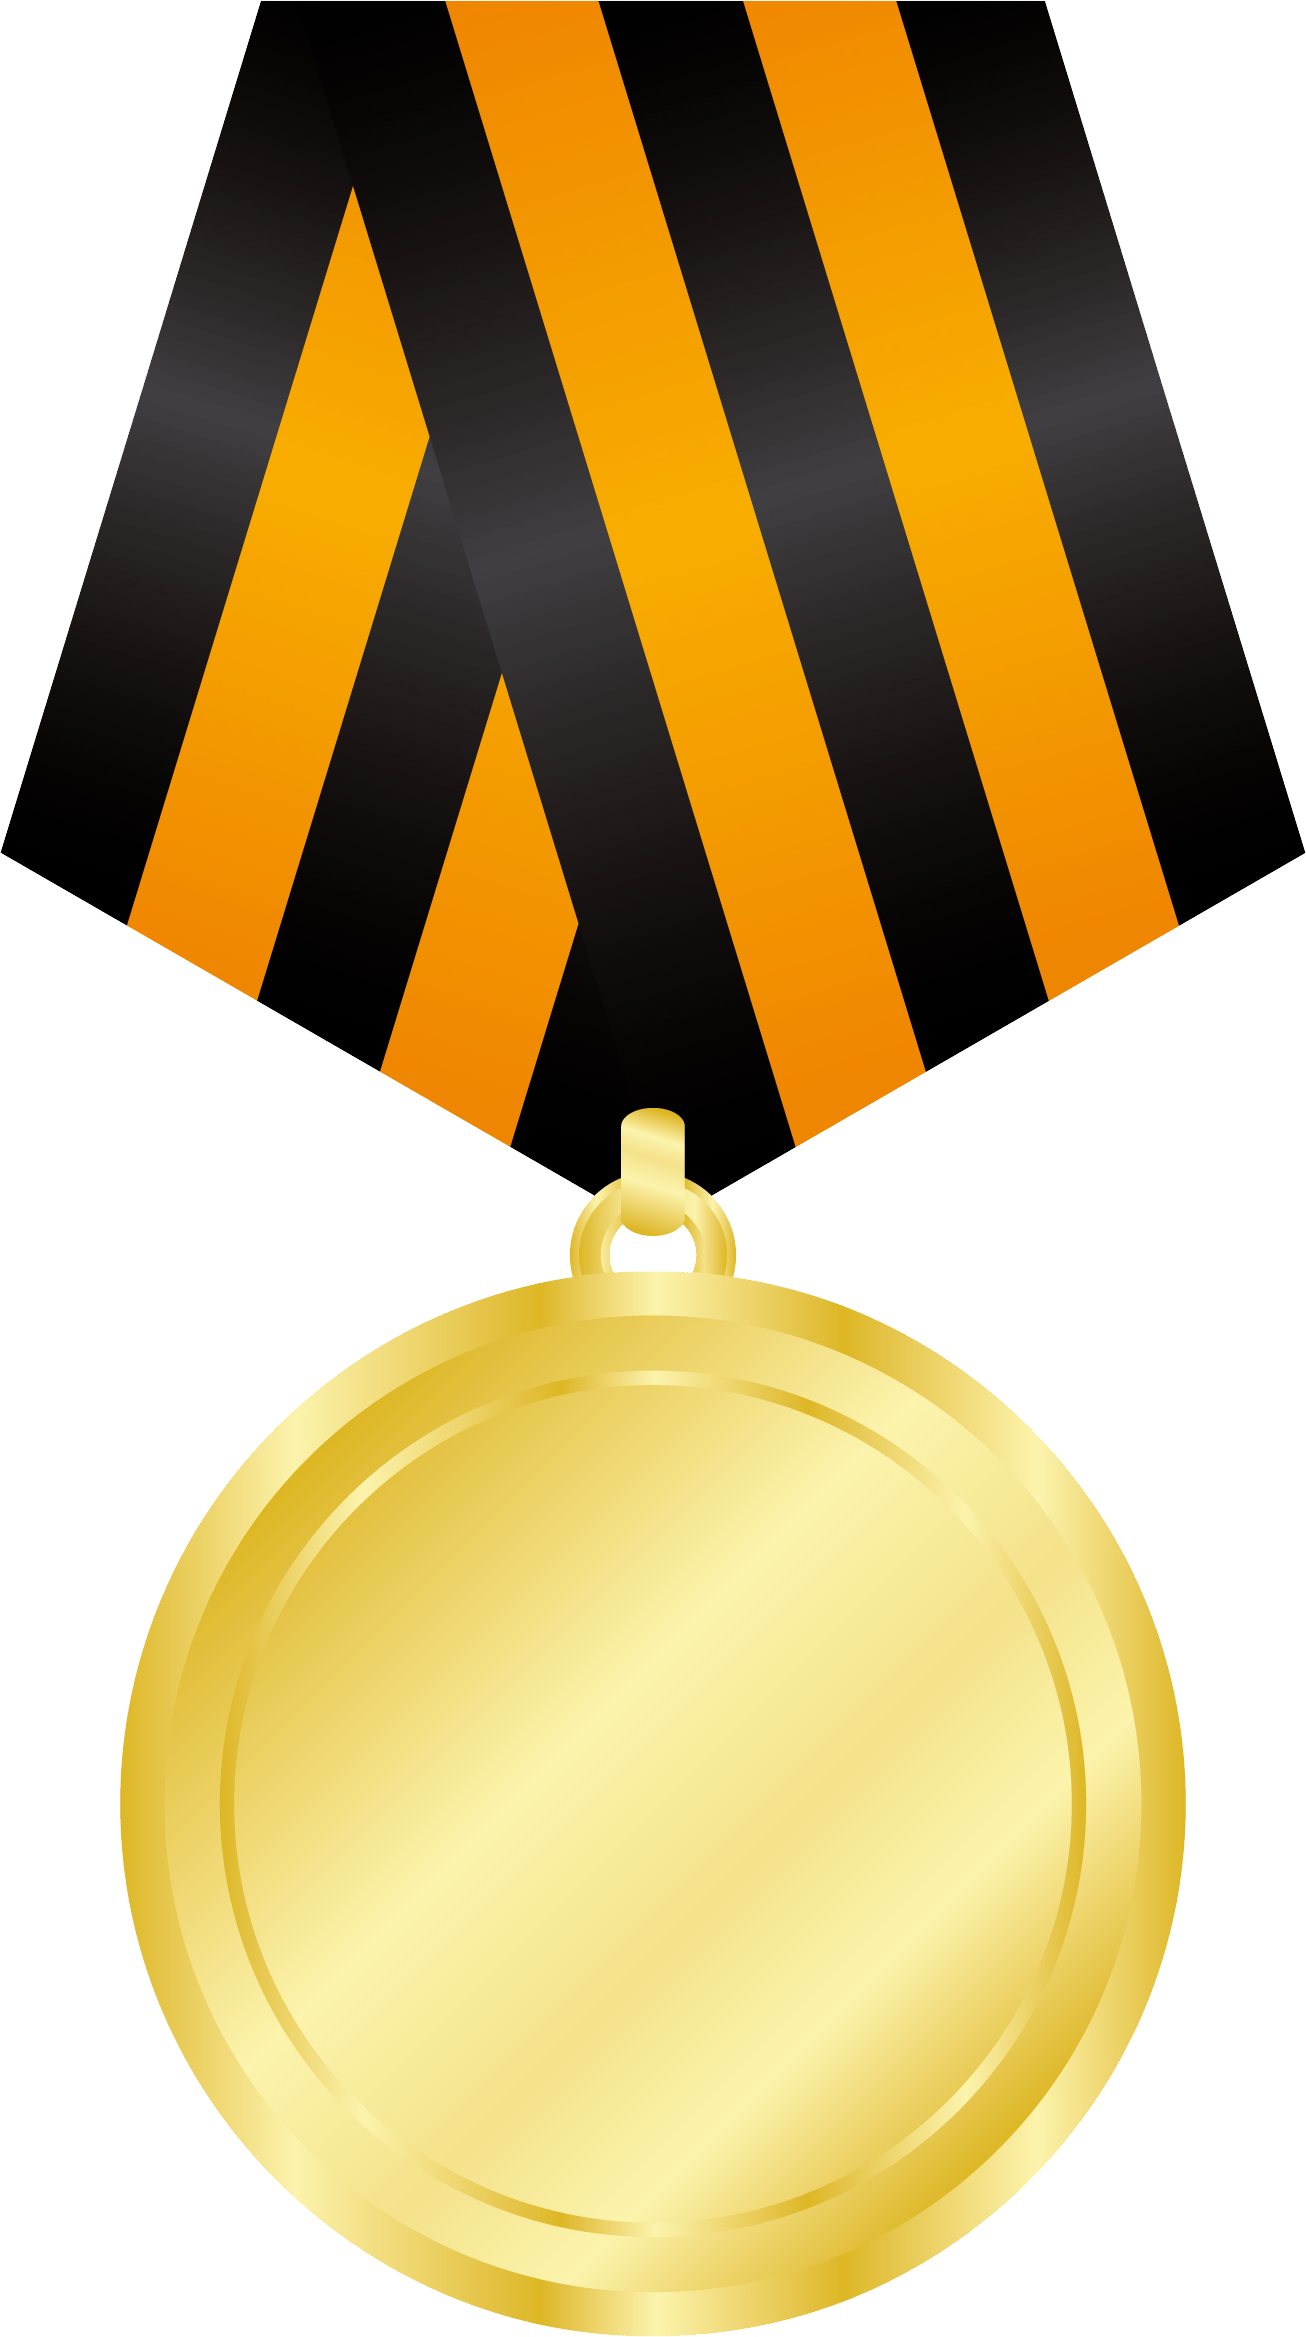 Gold Medal PNG Image